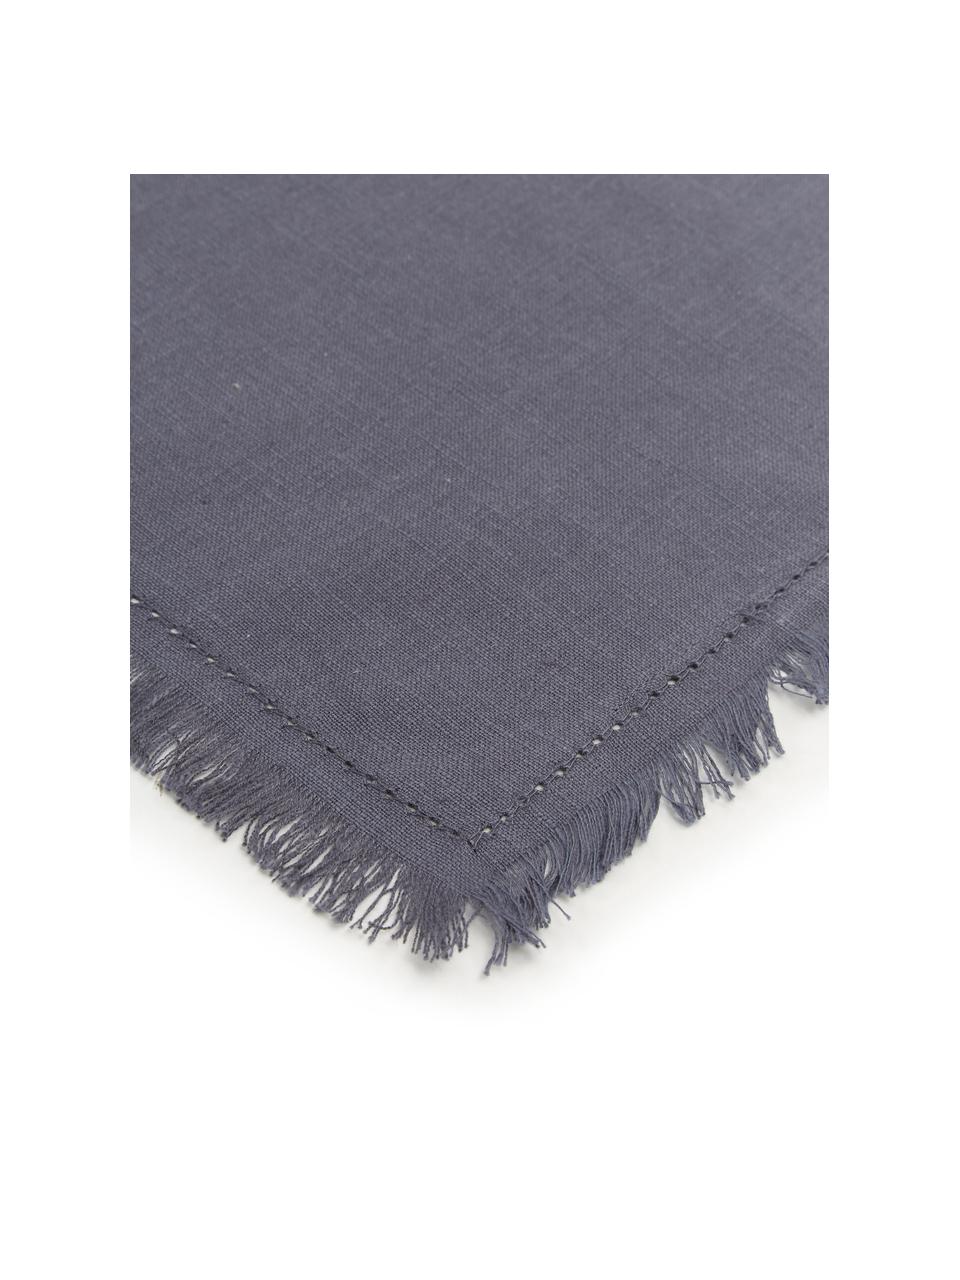 Serviette de table textile Henley, 2 pièces, 100 % coton, Bleu foncé, larg. 45 x long. 45 cm